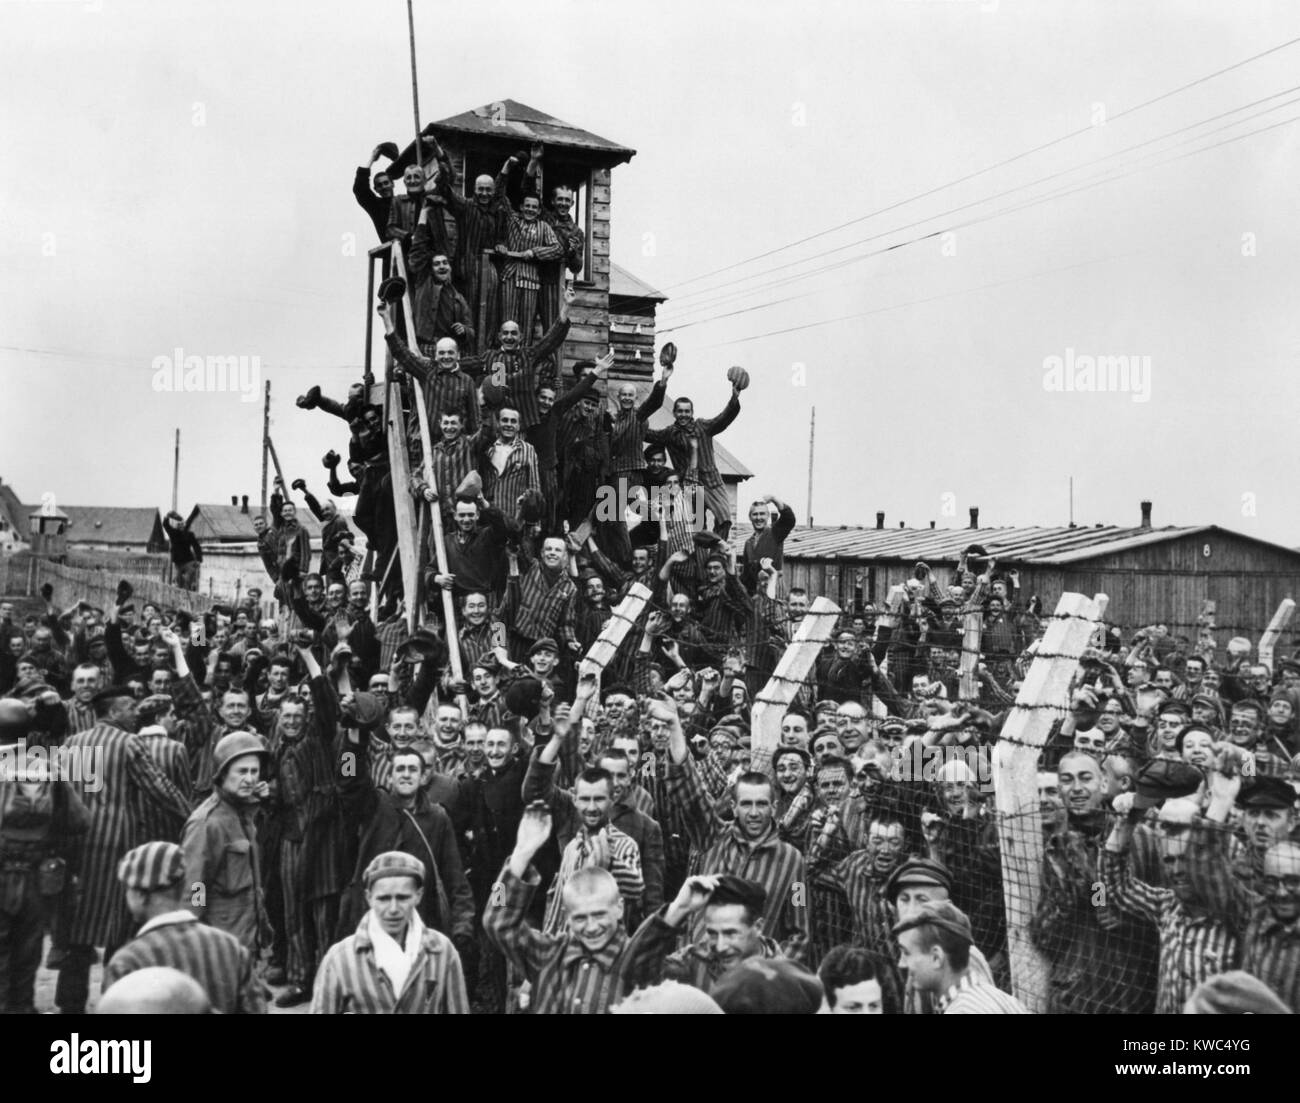 Les prisonniers de Dachau et applaudir la septième vague US Army libérateurs. 29 avril 1945, la Première Guerre mondiale (BSLOC_2__2015 13 18) Banque D'Images